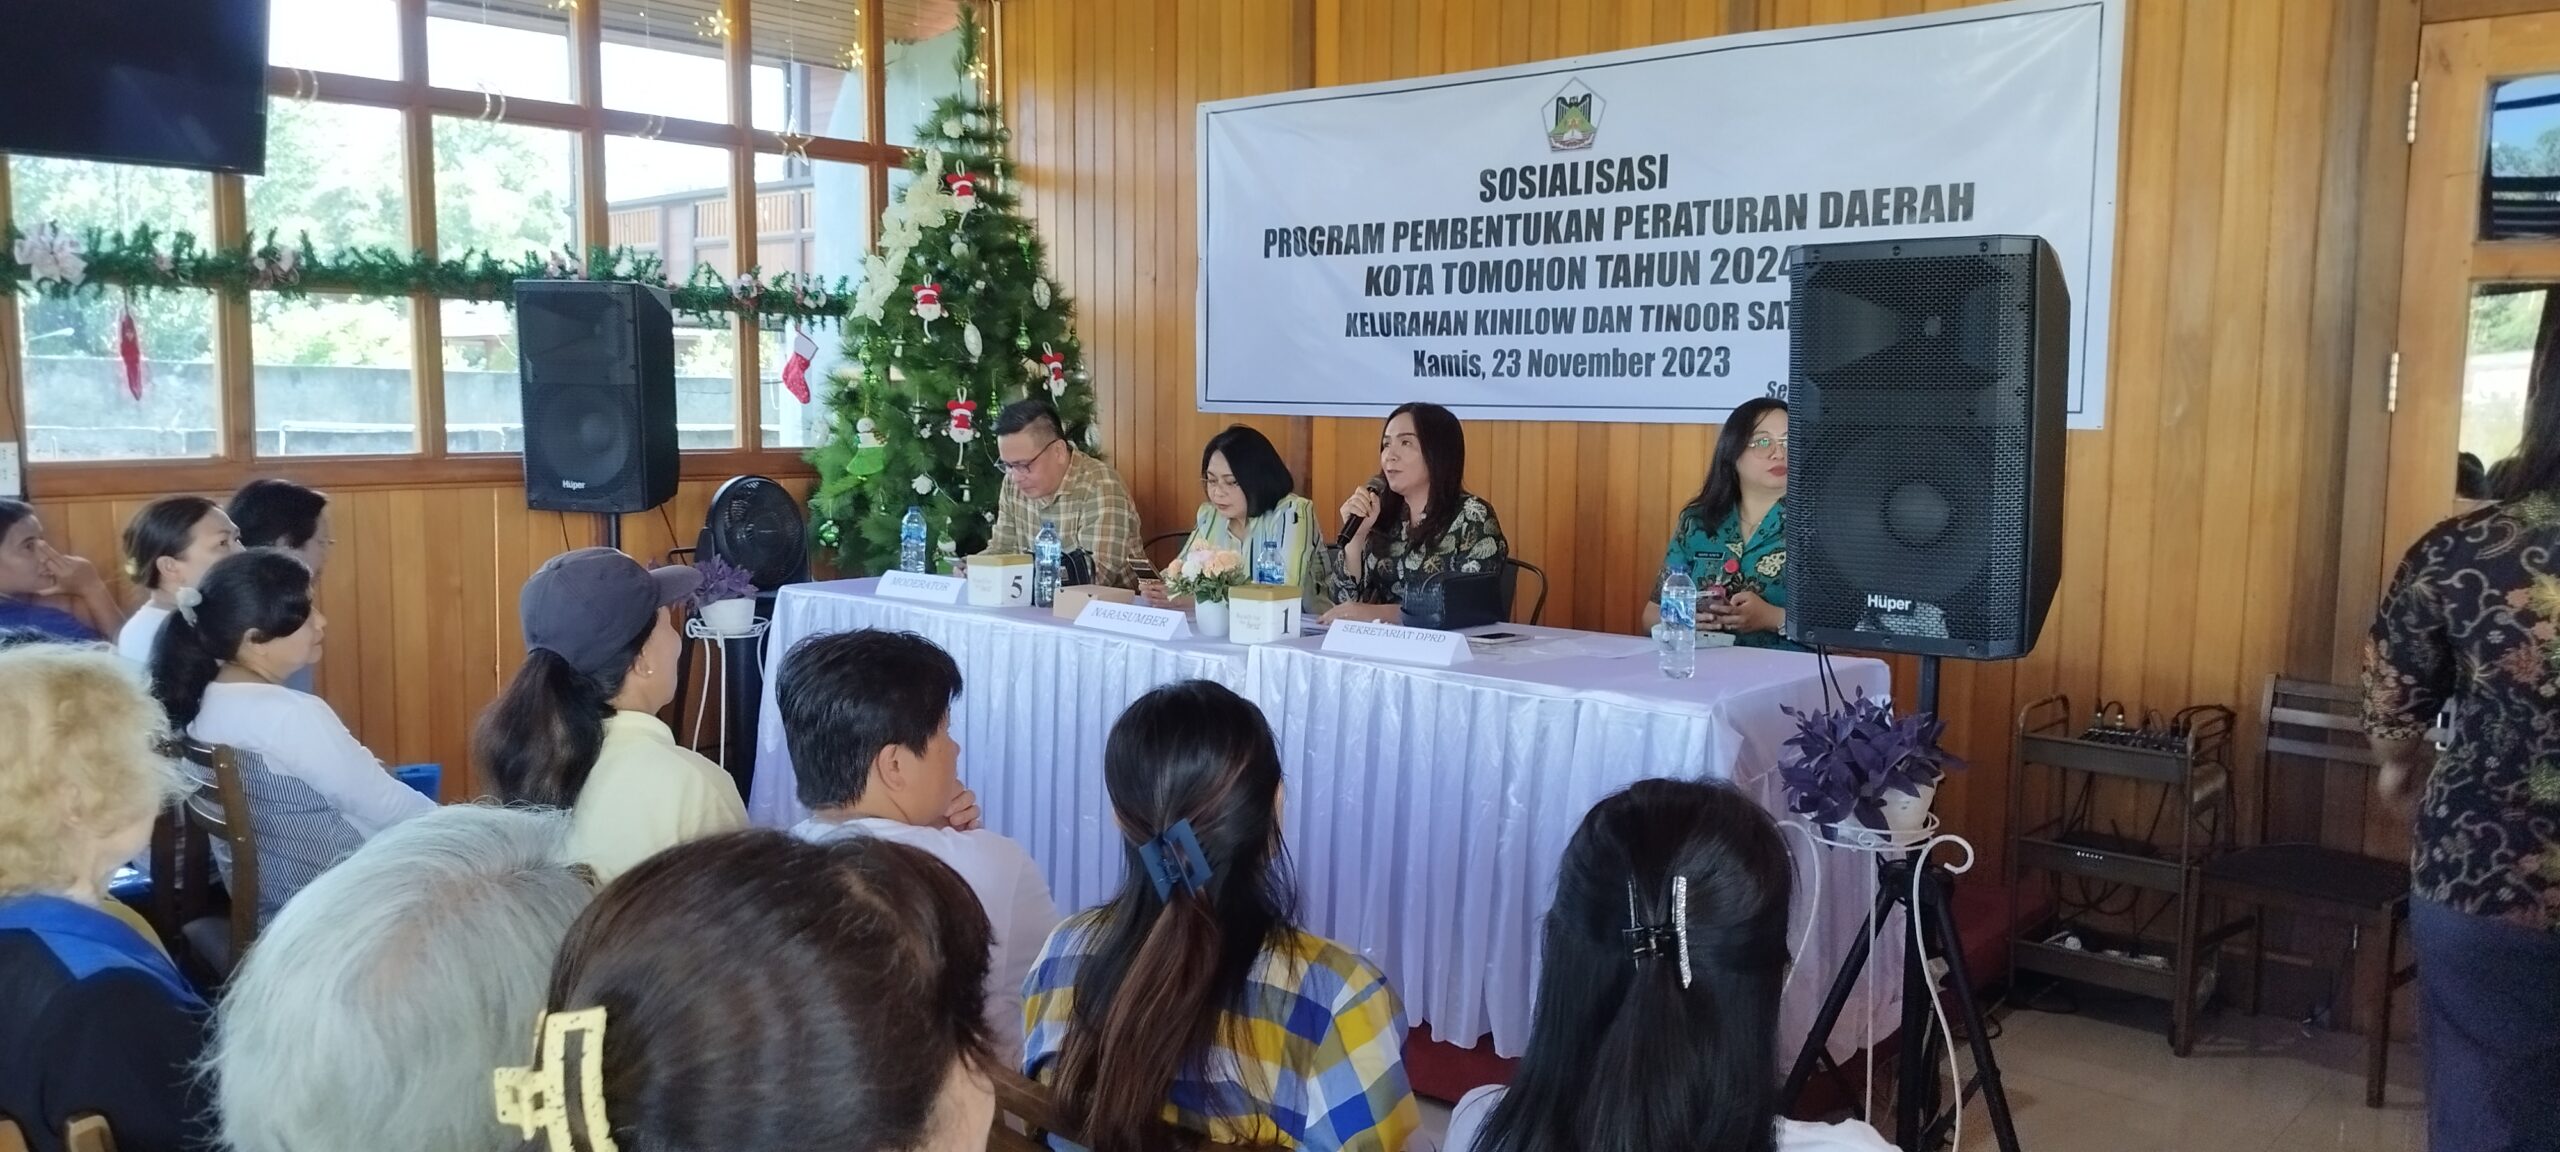 Jenny Sompotan Minta Masukan Warga Kinilow dan Tinoor 1 Soal Sejarah Pembentukan Kota Tomohon